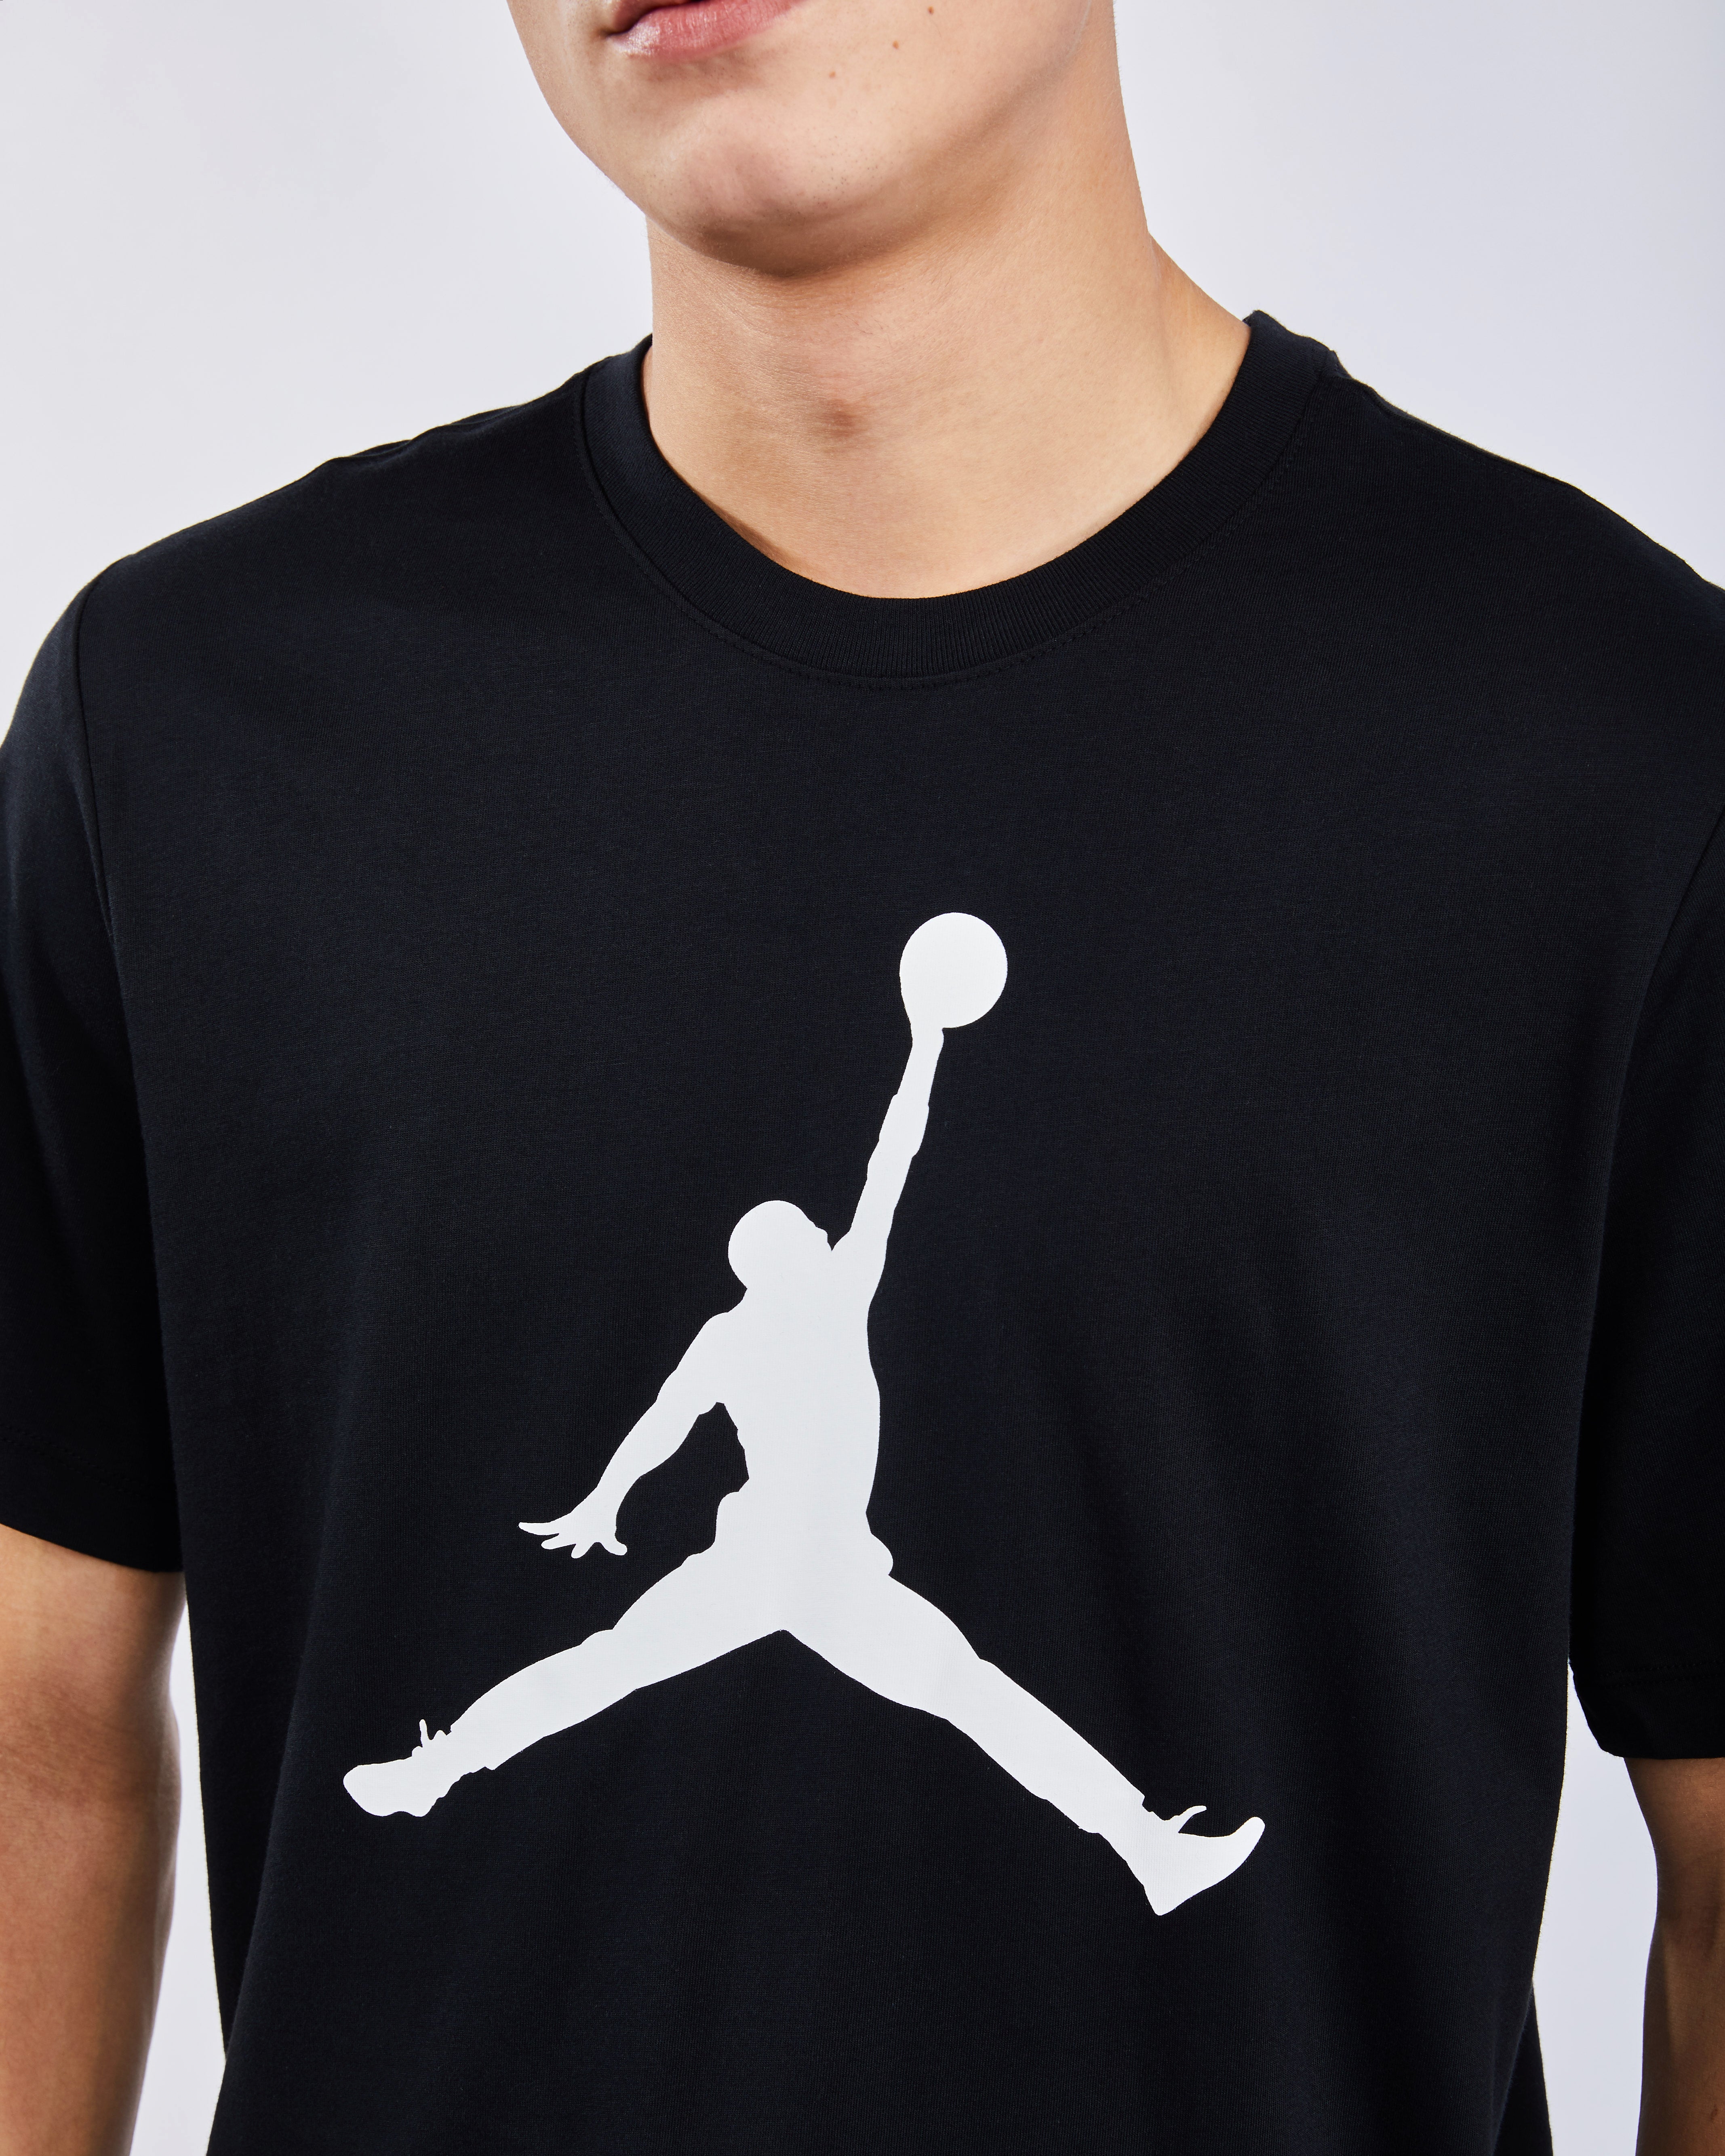 jumpman logo t shirt